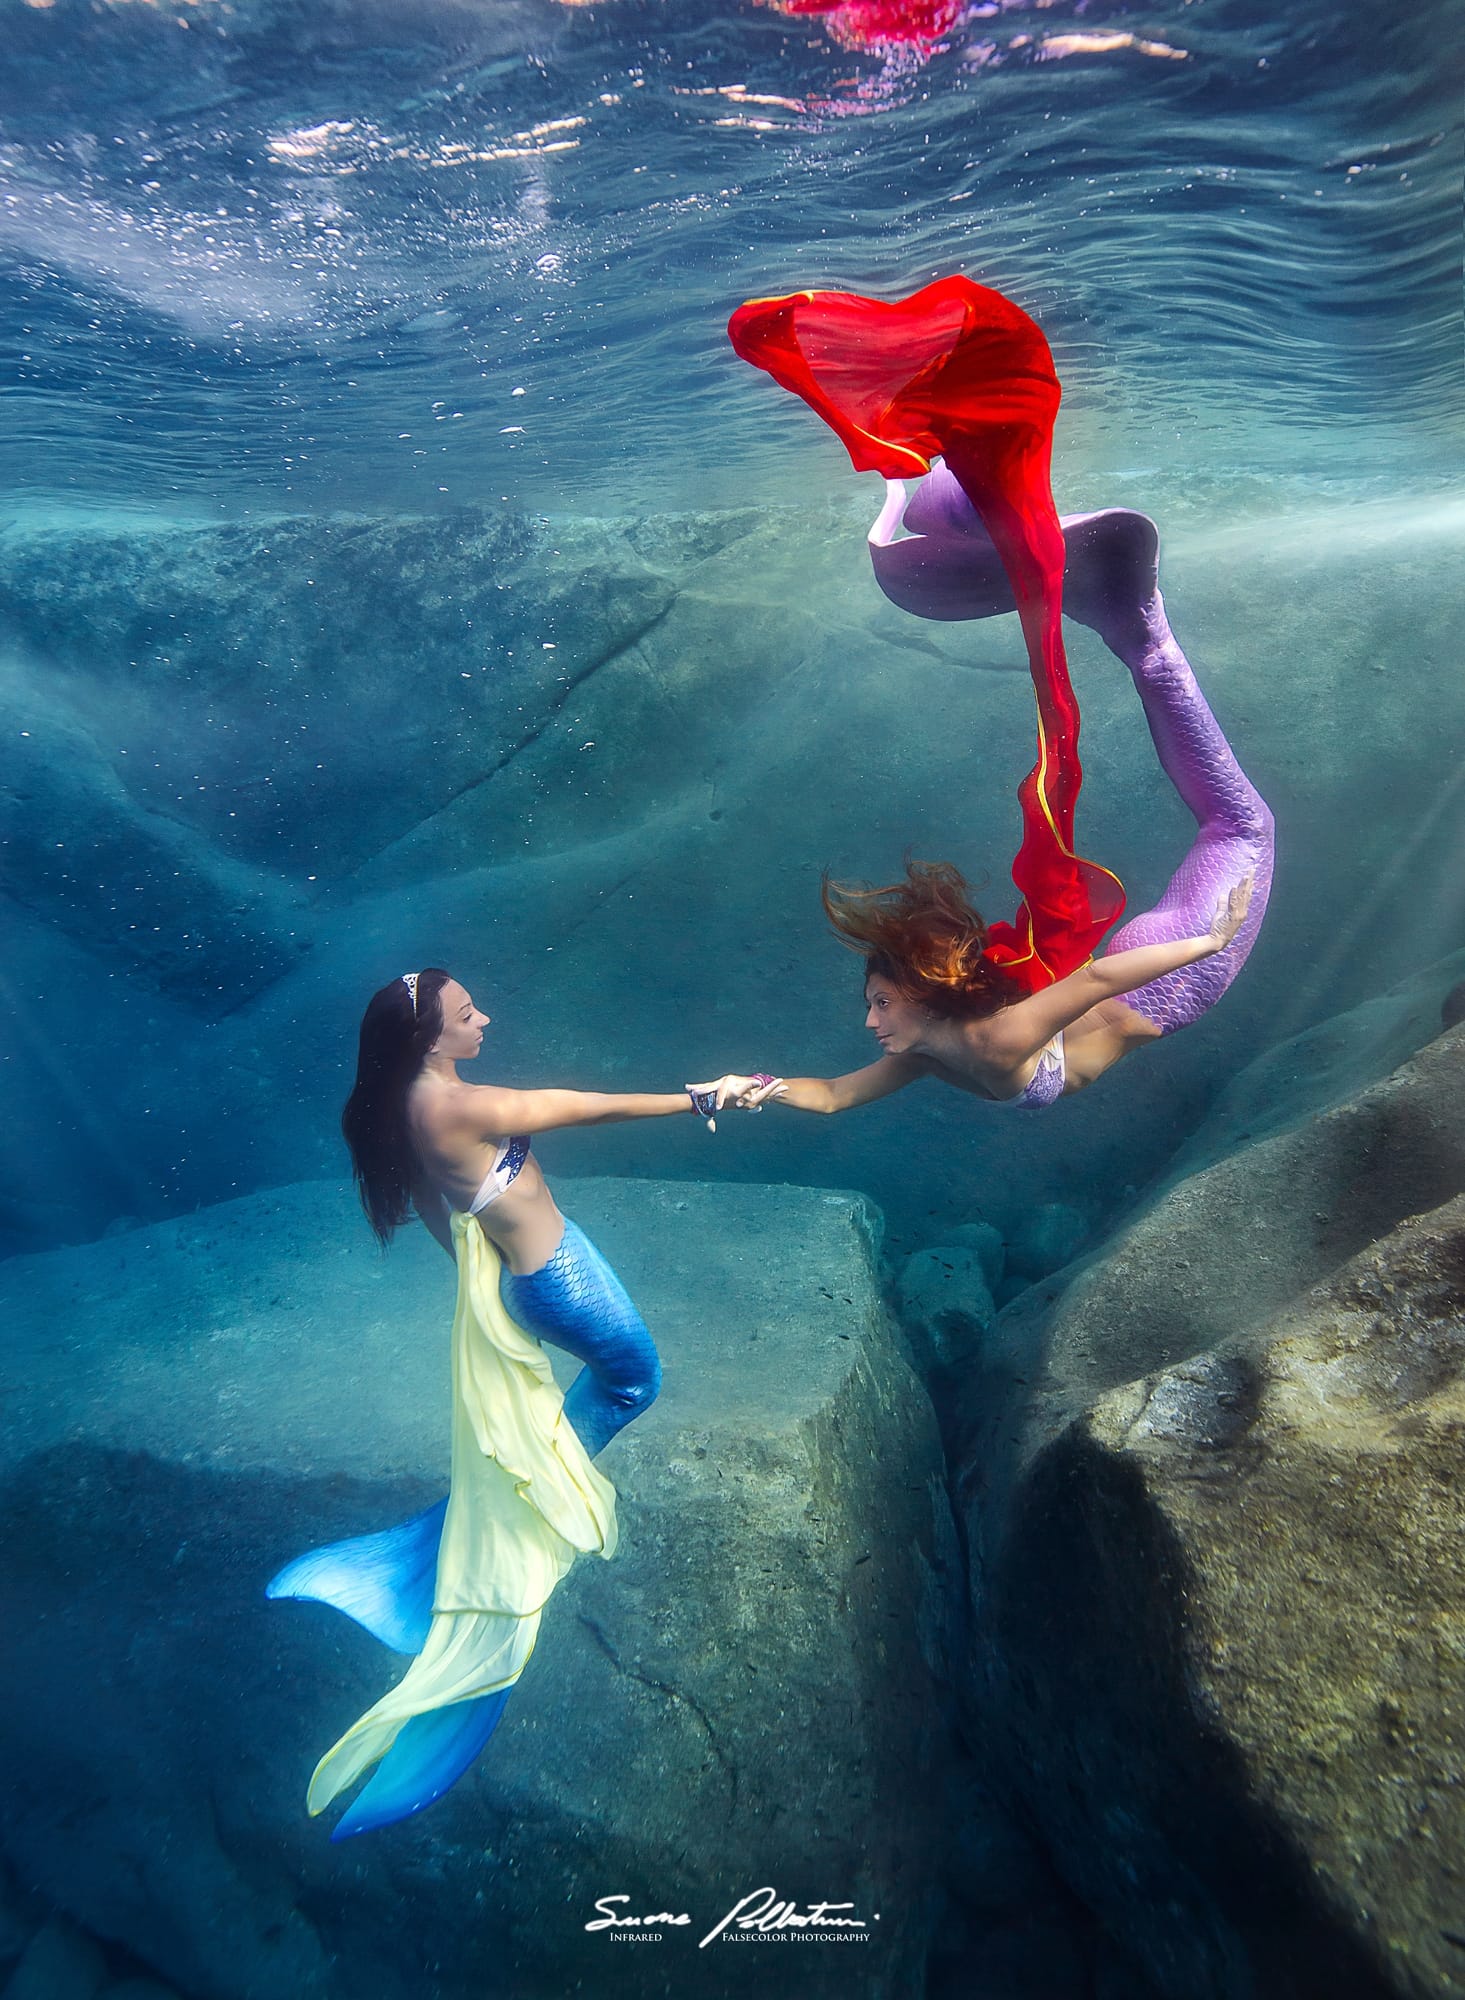 mermaid underwater